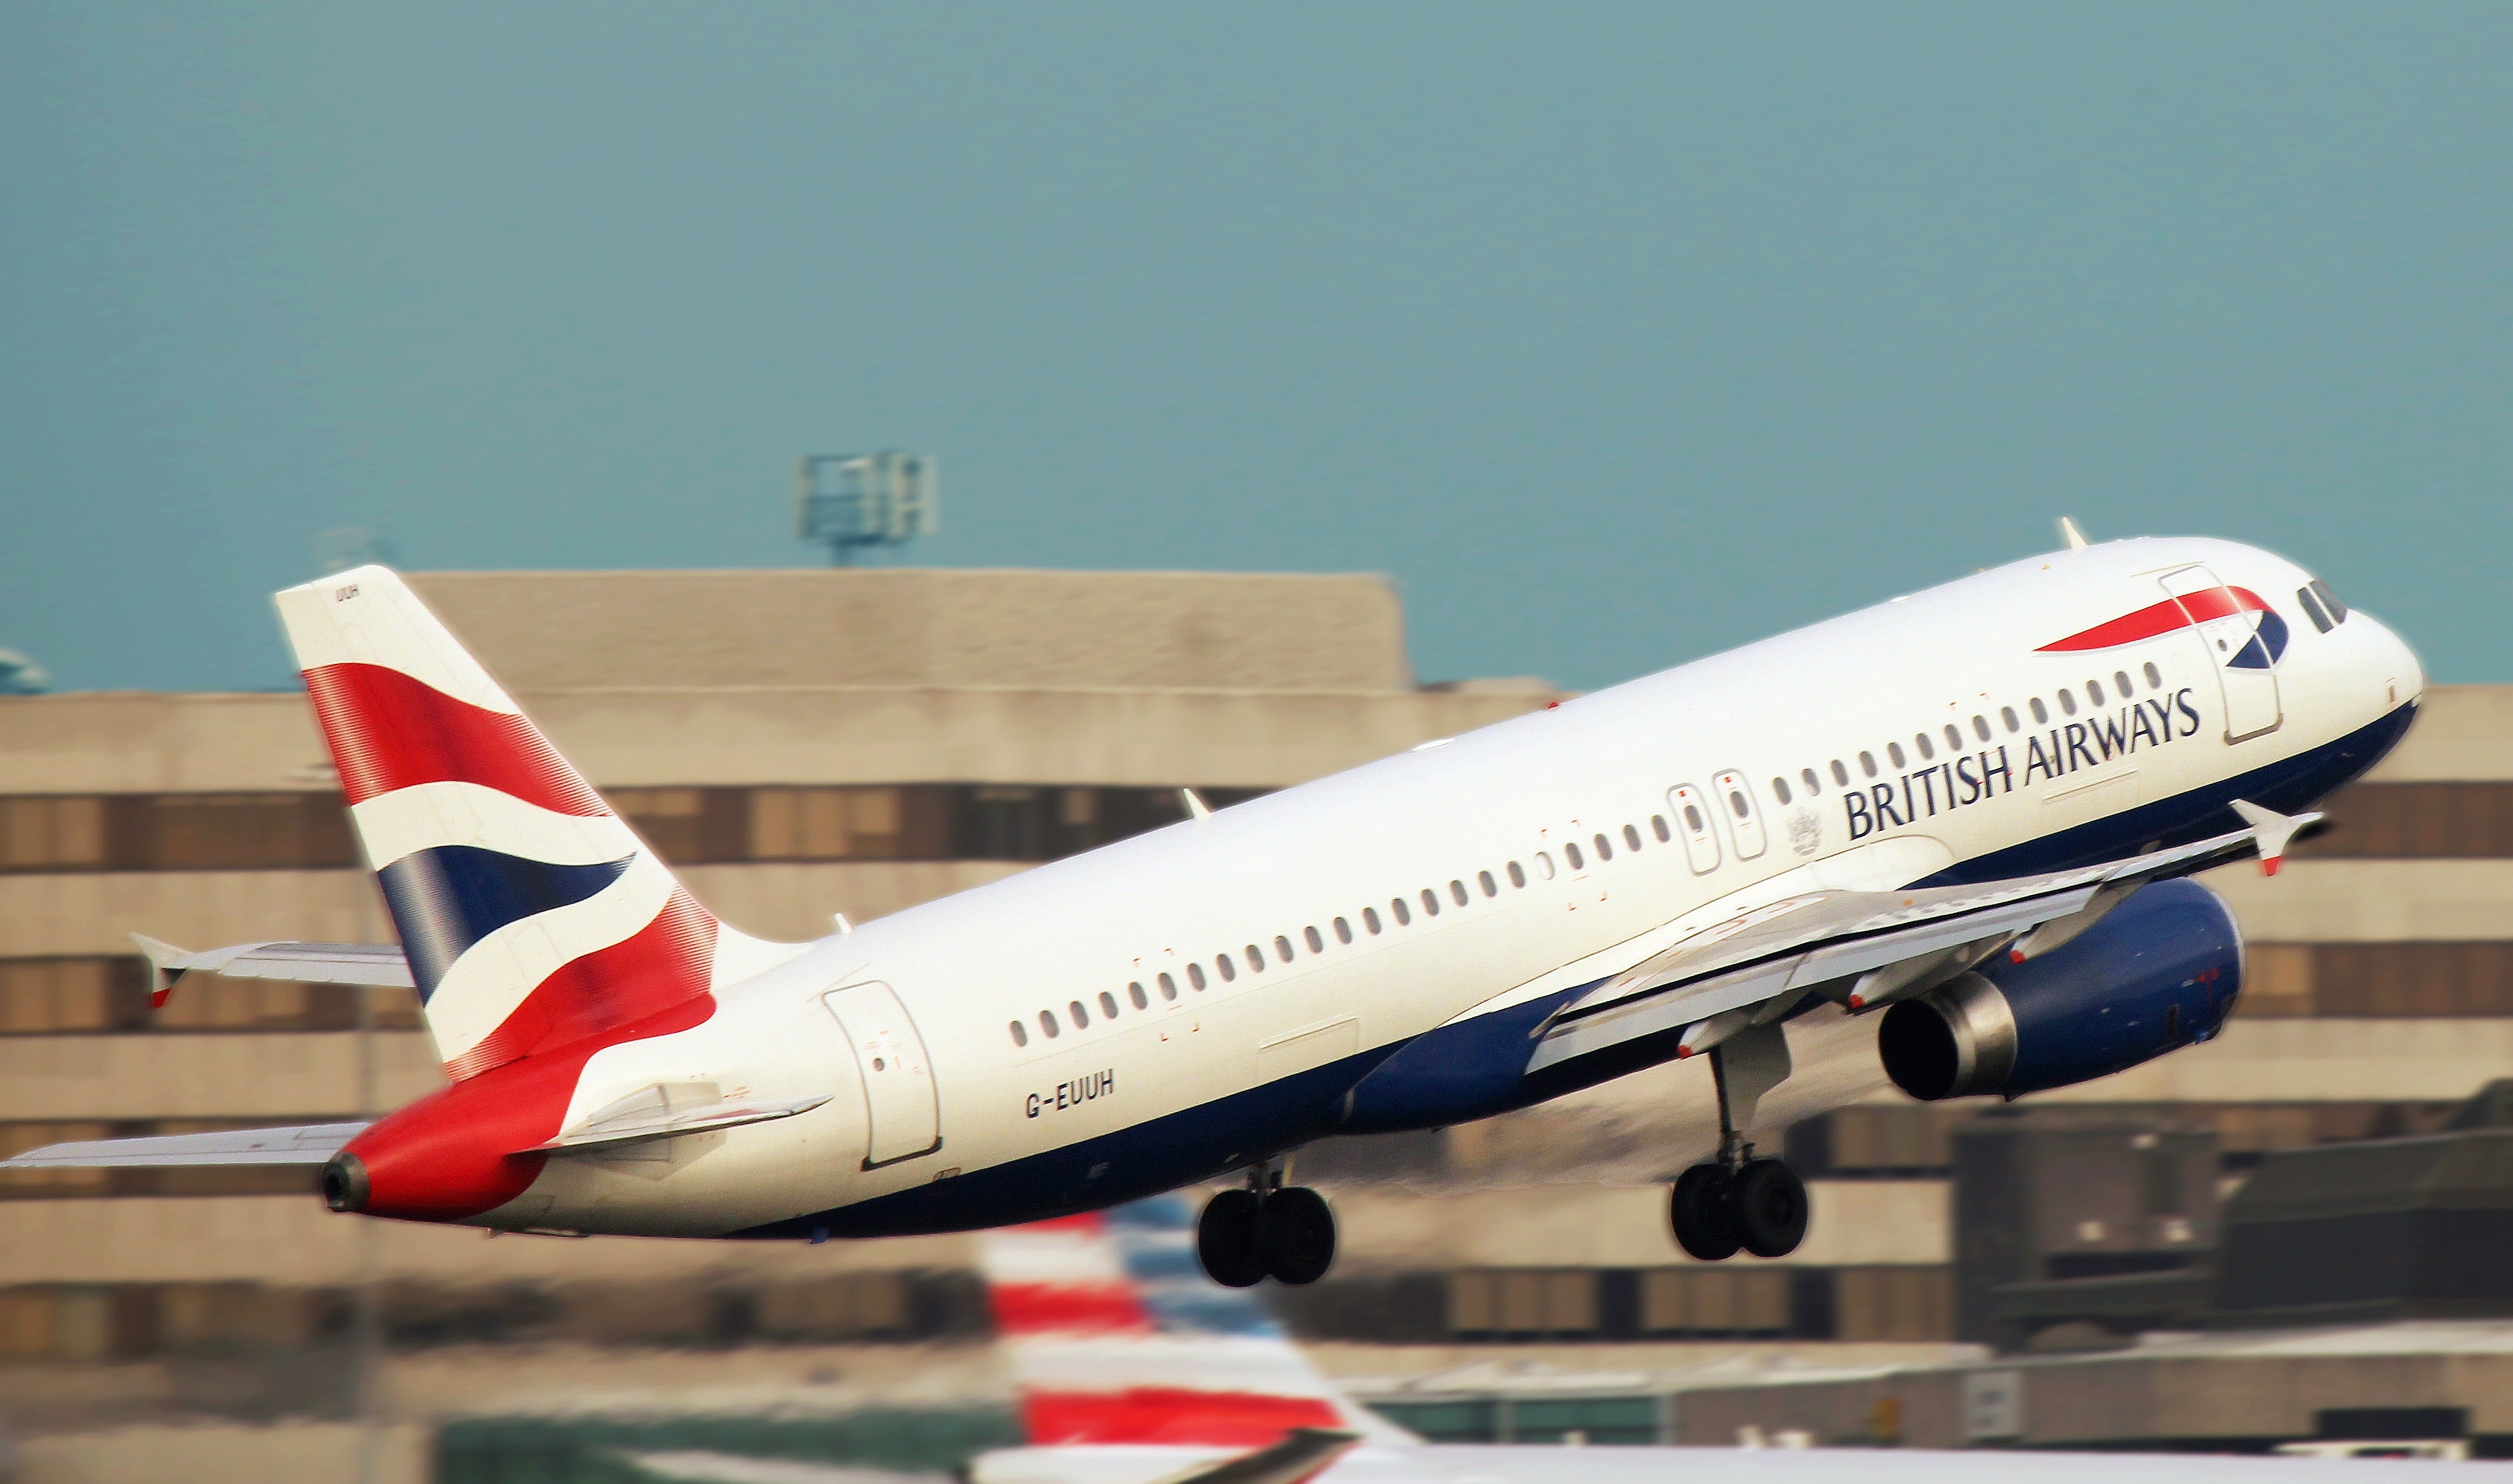 White british airways taking off the runway photo